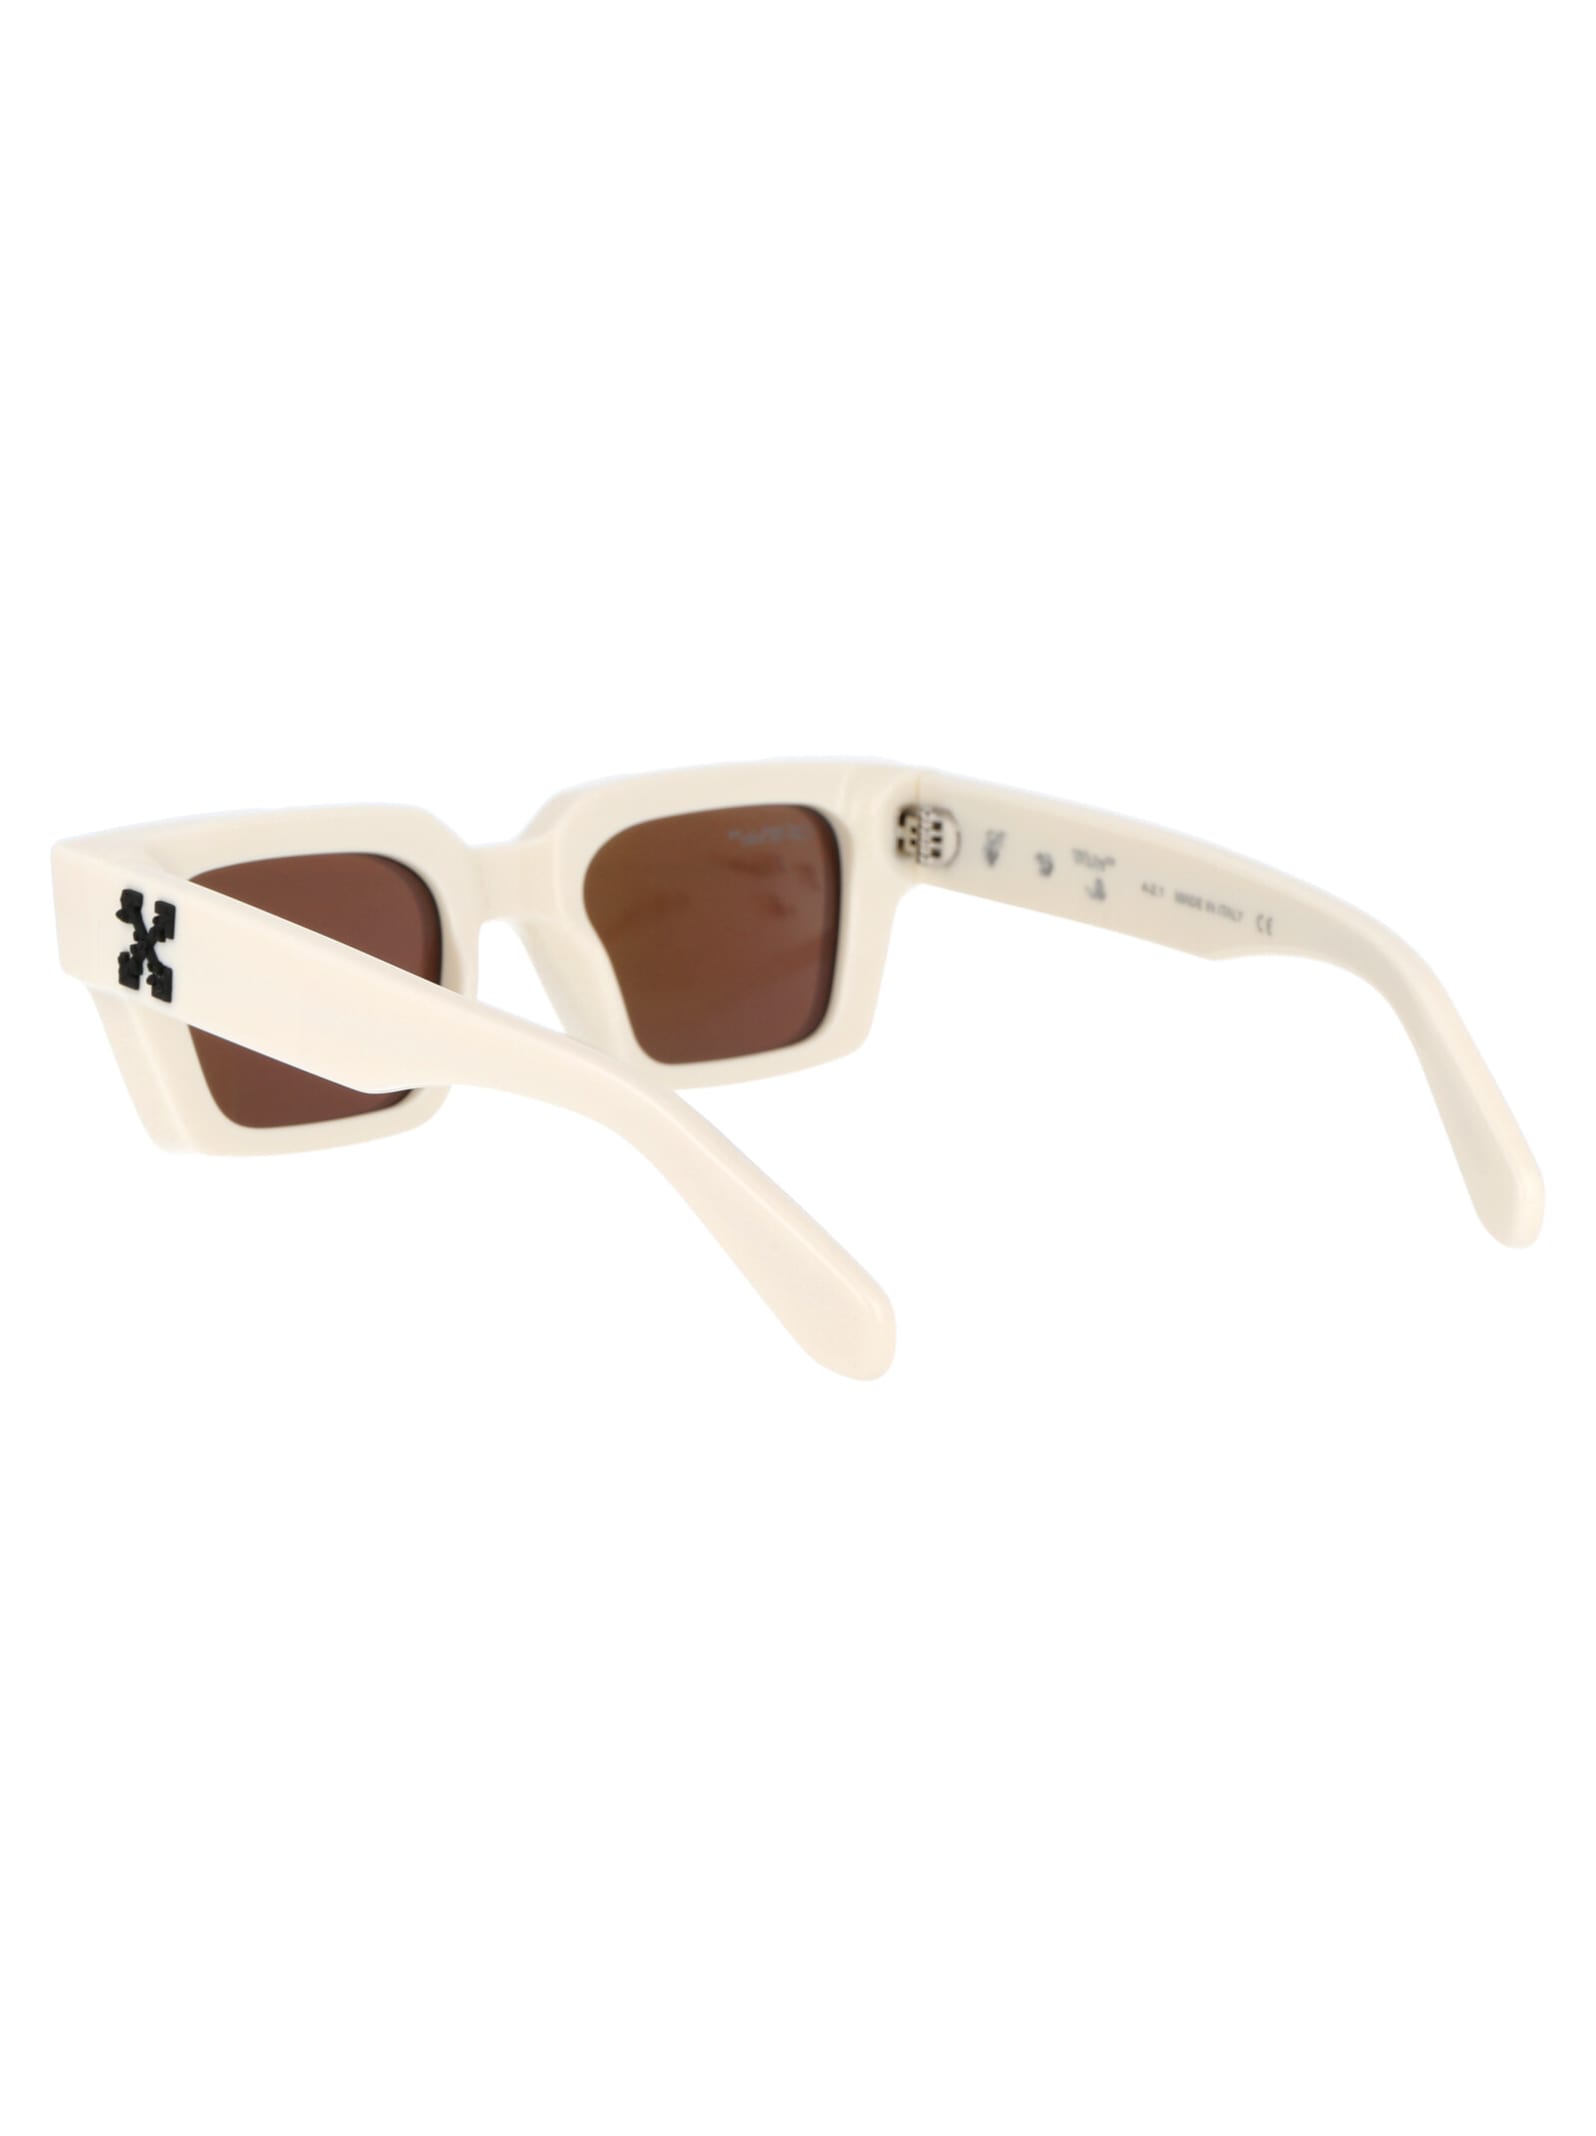 Off-white Virgil Rectangle-frame Sunglasses (15cm) In White,mirror